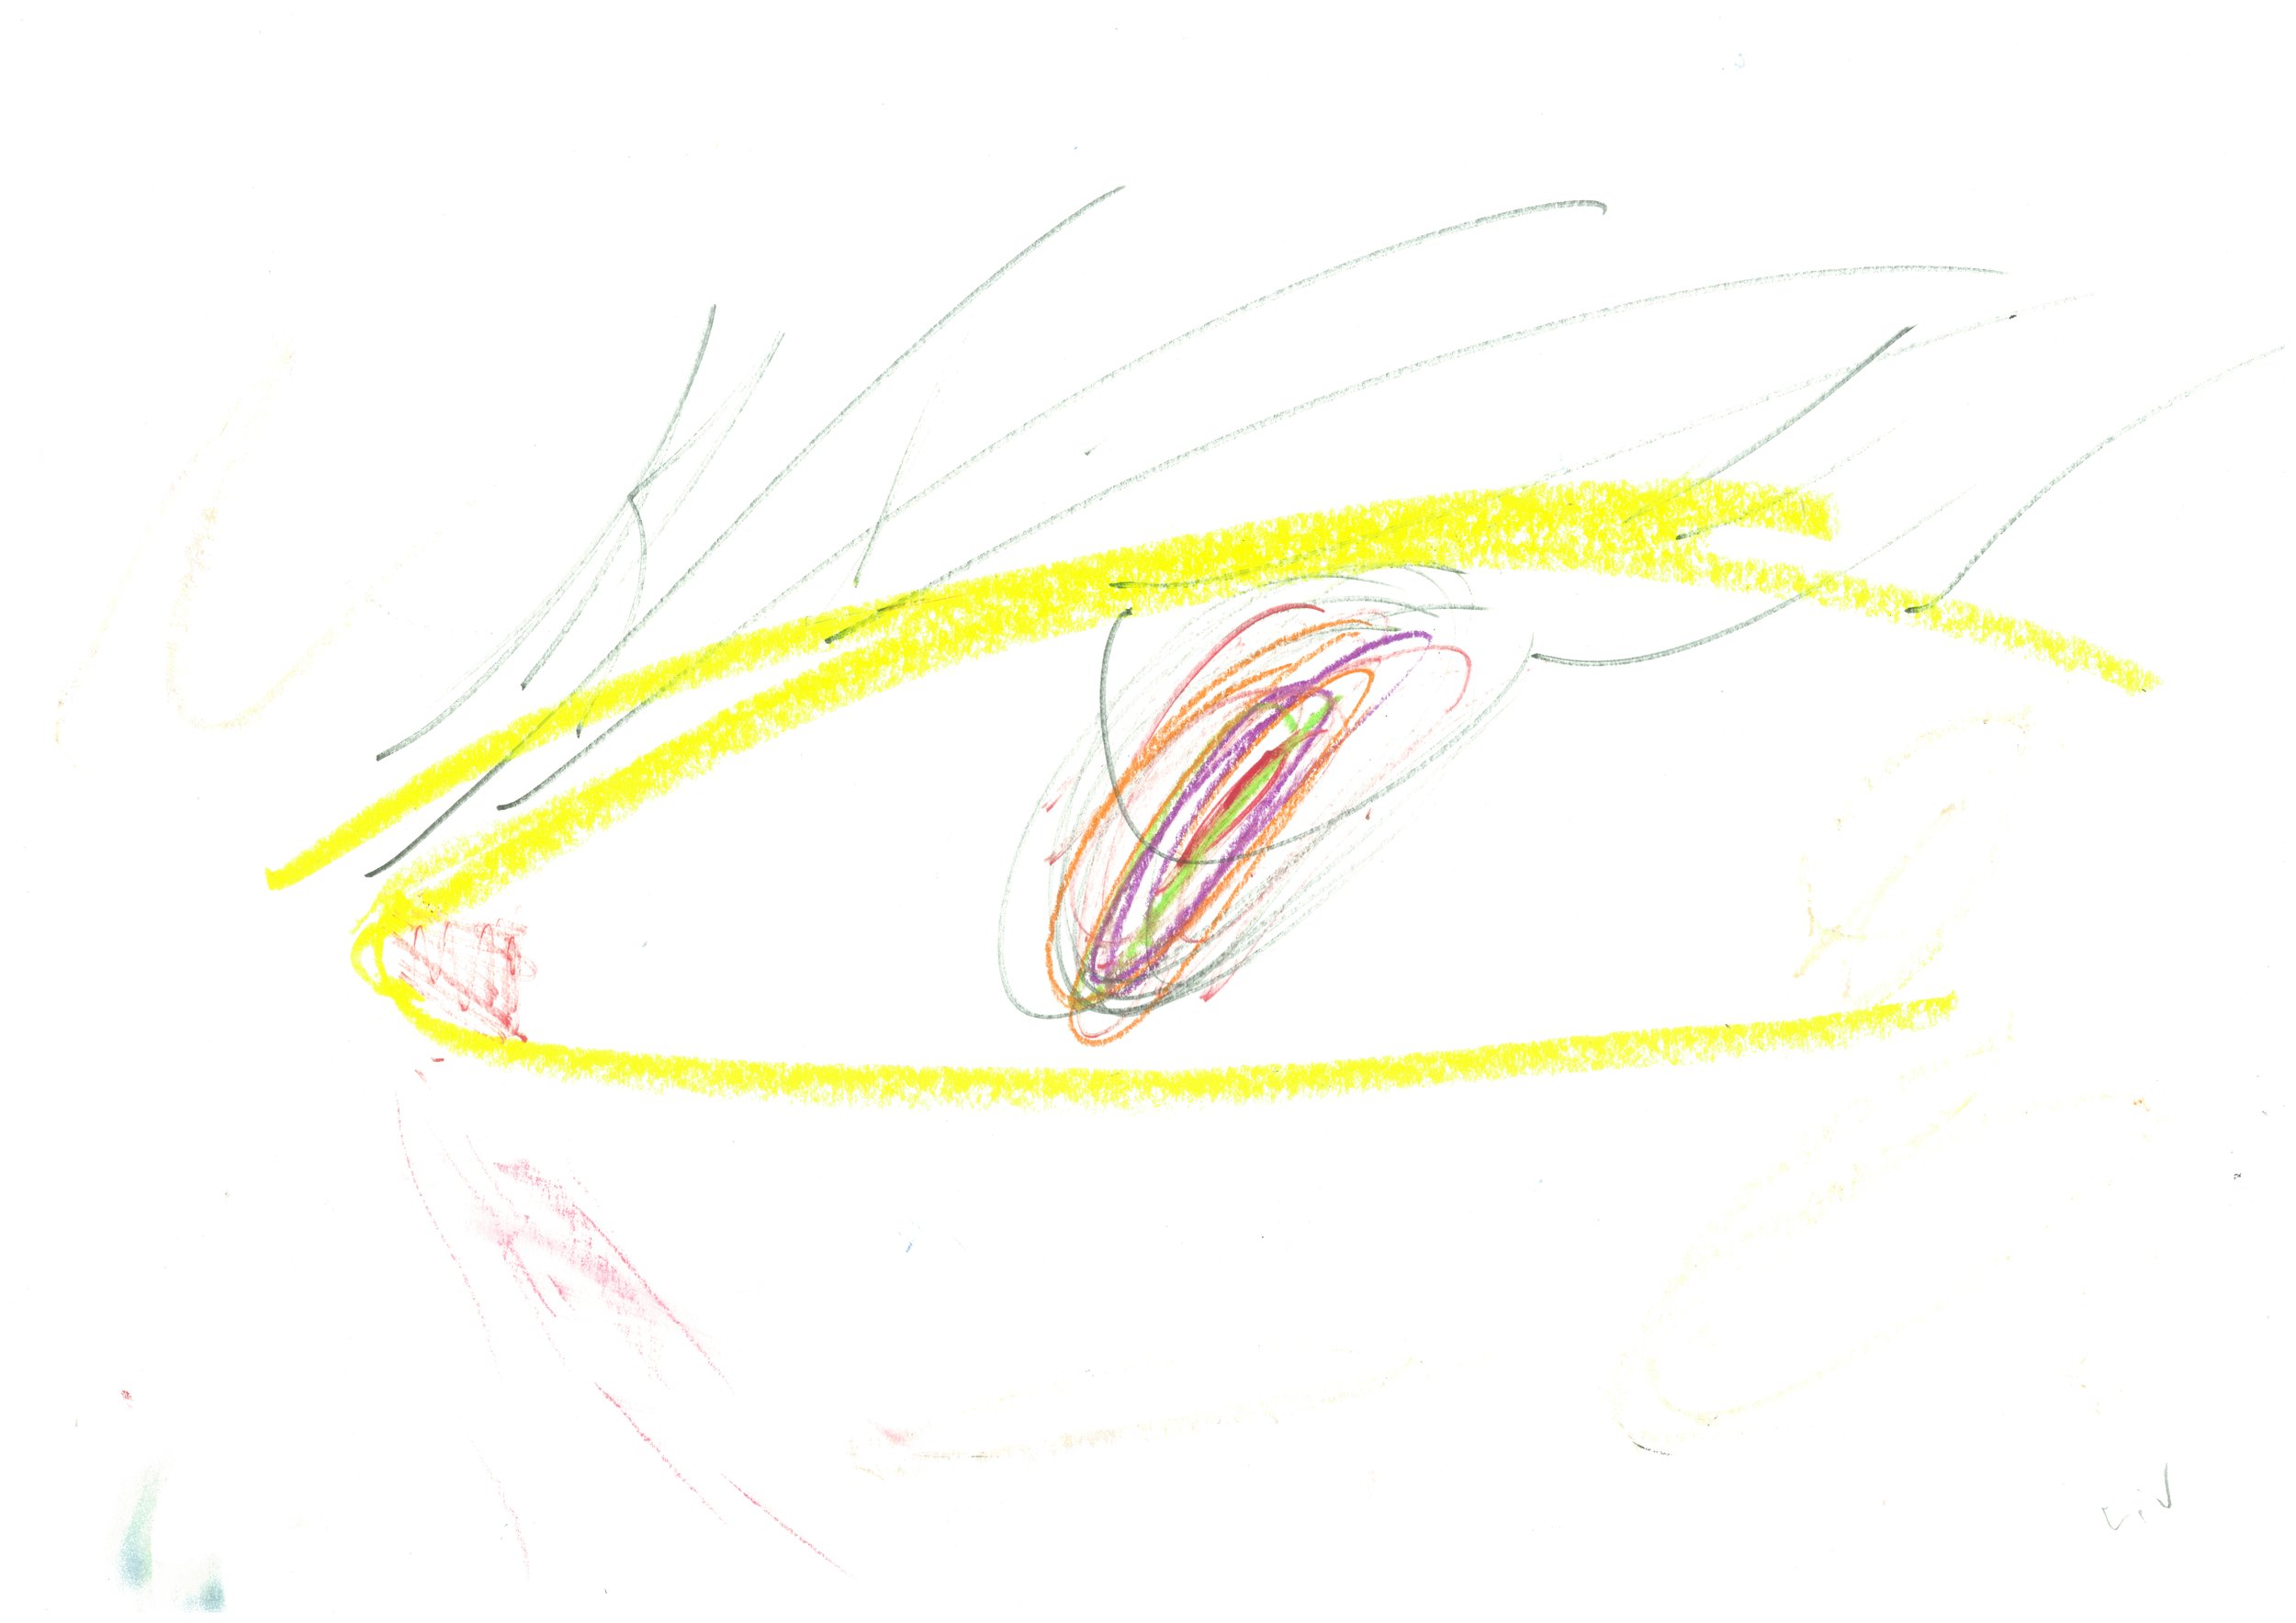 eye.JPG